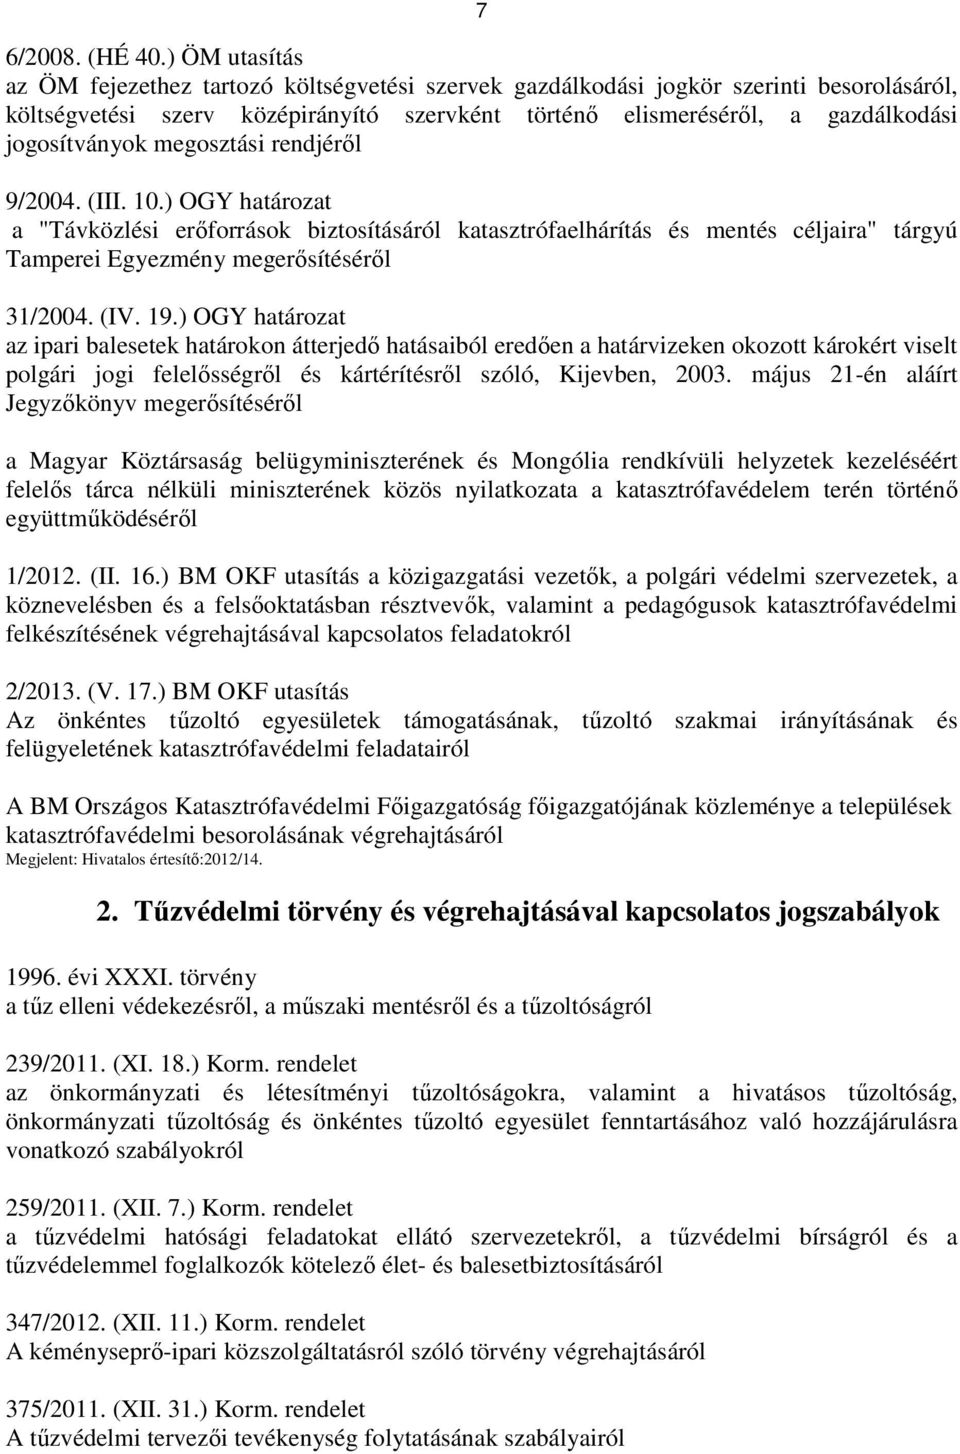 jogosítványok megosztási rendjérıl 9/2004. (III. 10.) OGY határozat a "Távközlési erıforrások biztosításáról katasztrófaelhárítás és mentés céljaira" tárgyú Tamperei Egyezmény megerısítésérıl 31/2004.